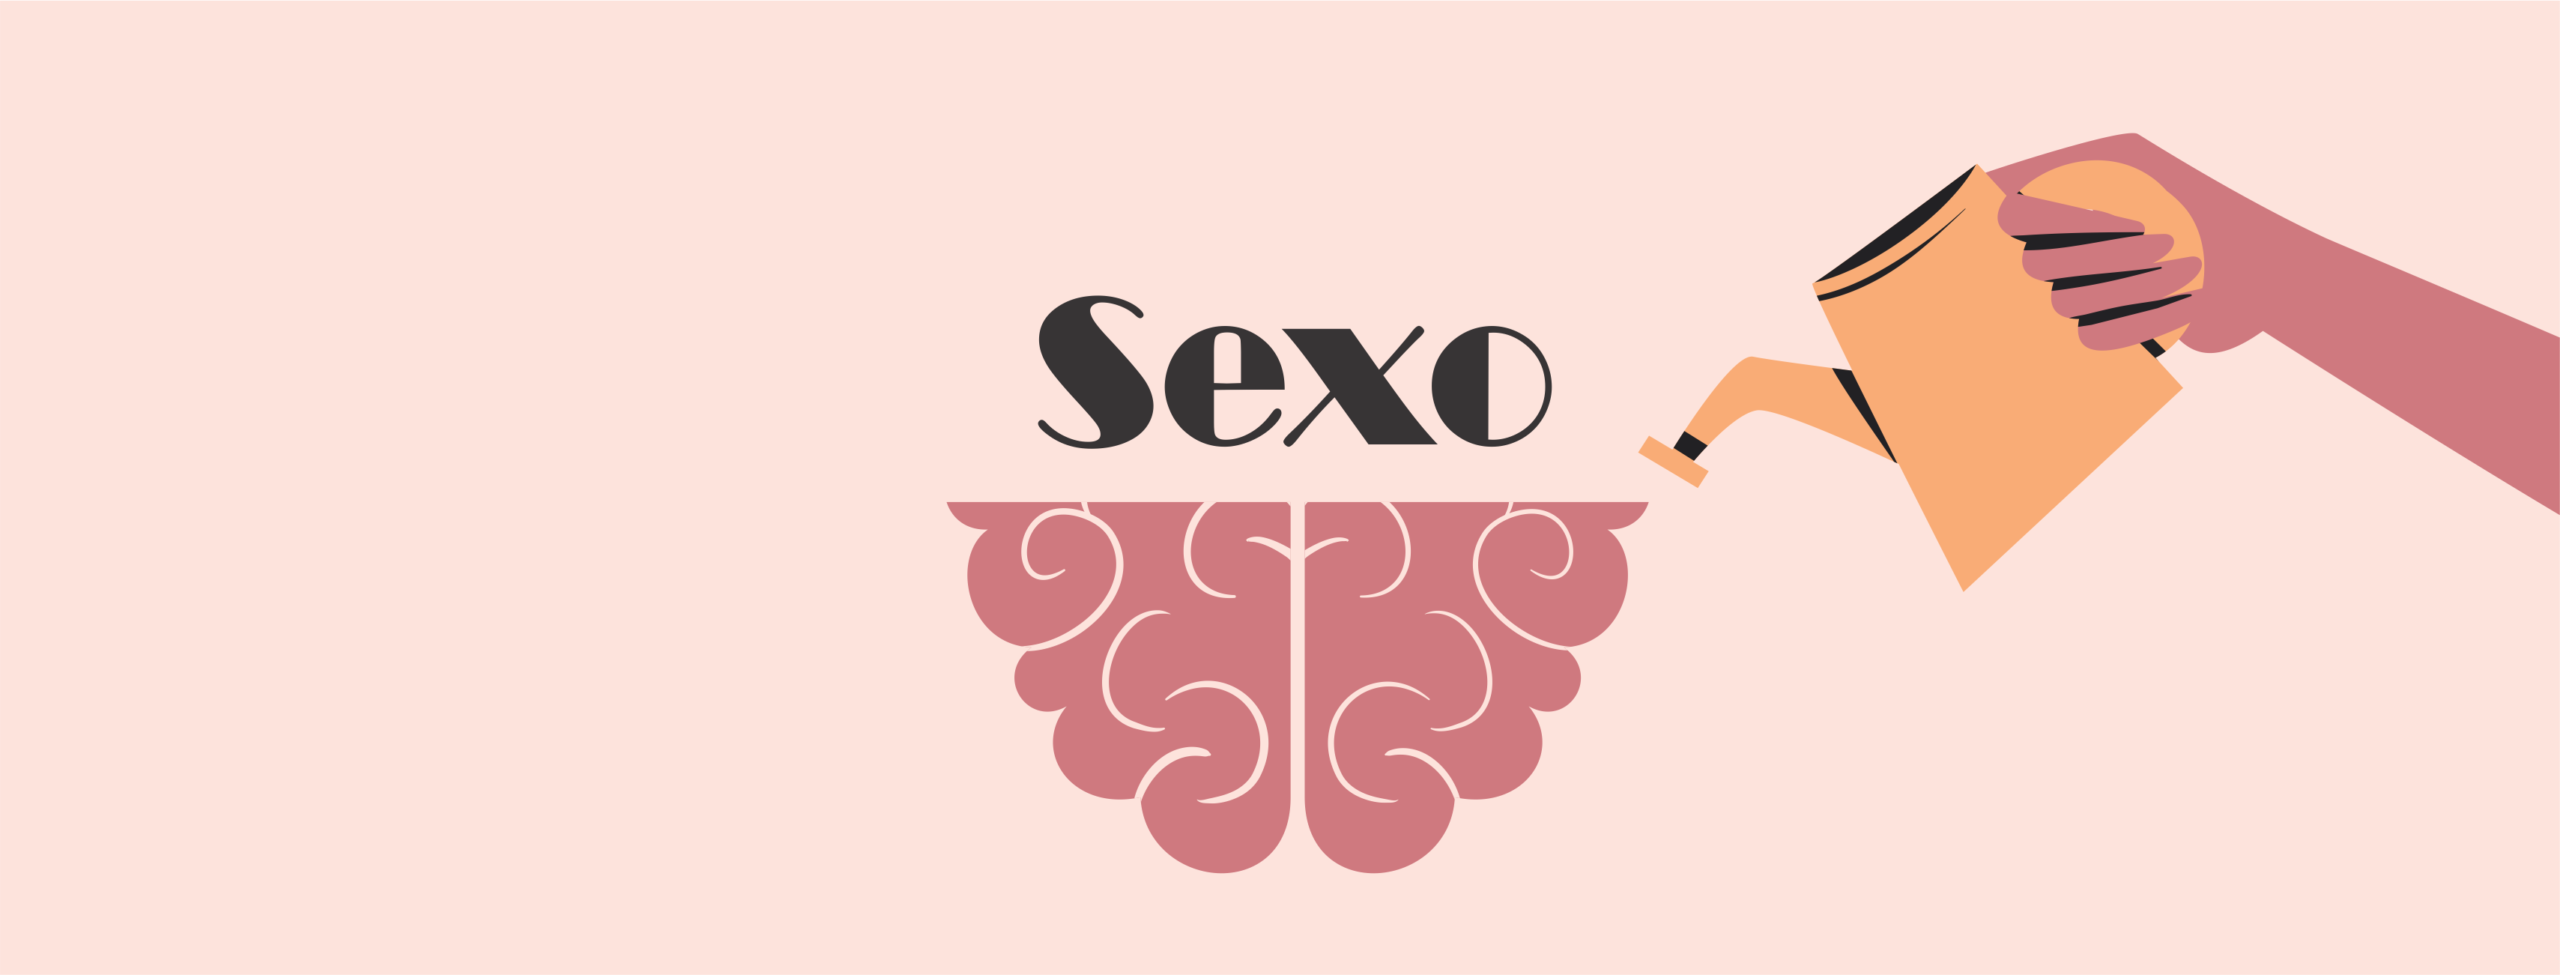 O que você pensa na hora do sexo diz muito sobre a sua saúde imagem